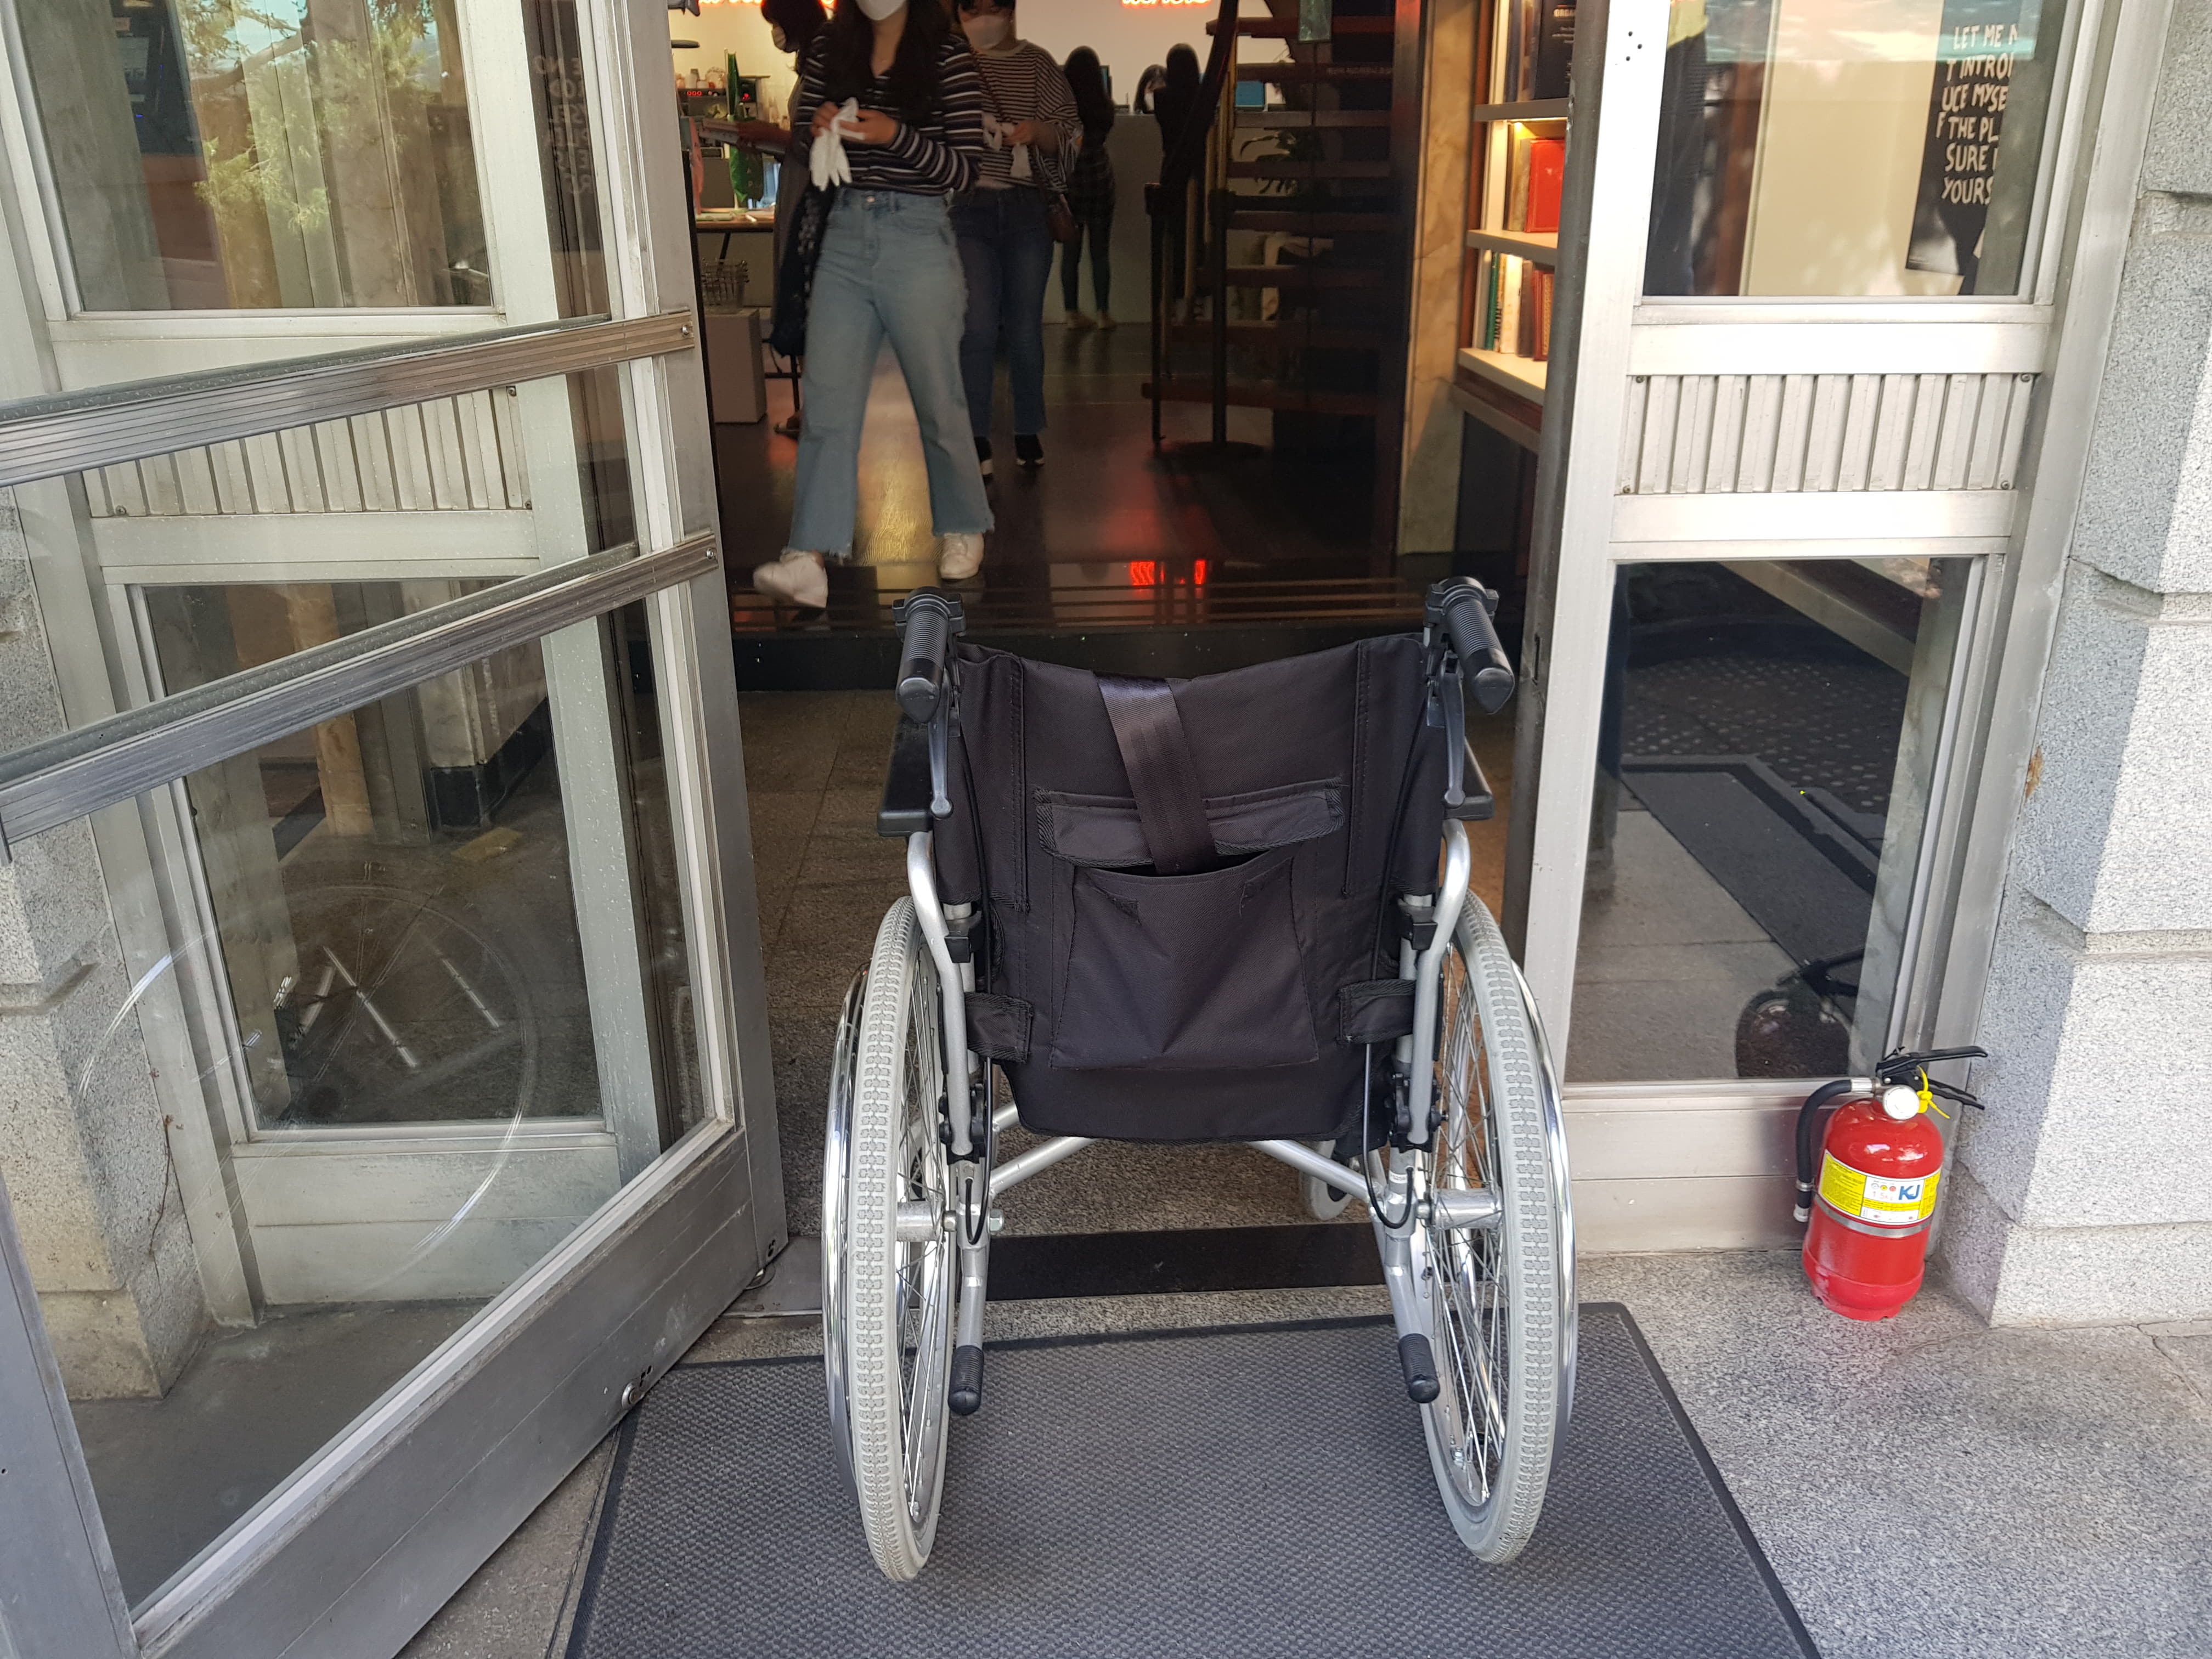 접근로/주출입구0 : 휠체어 사용자에게 다소 좁은 대림미술관 주출입구 